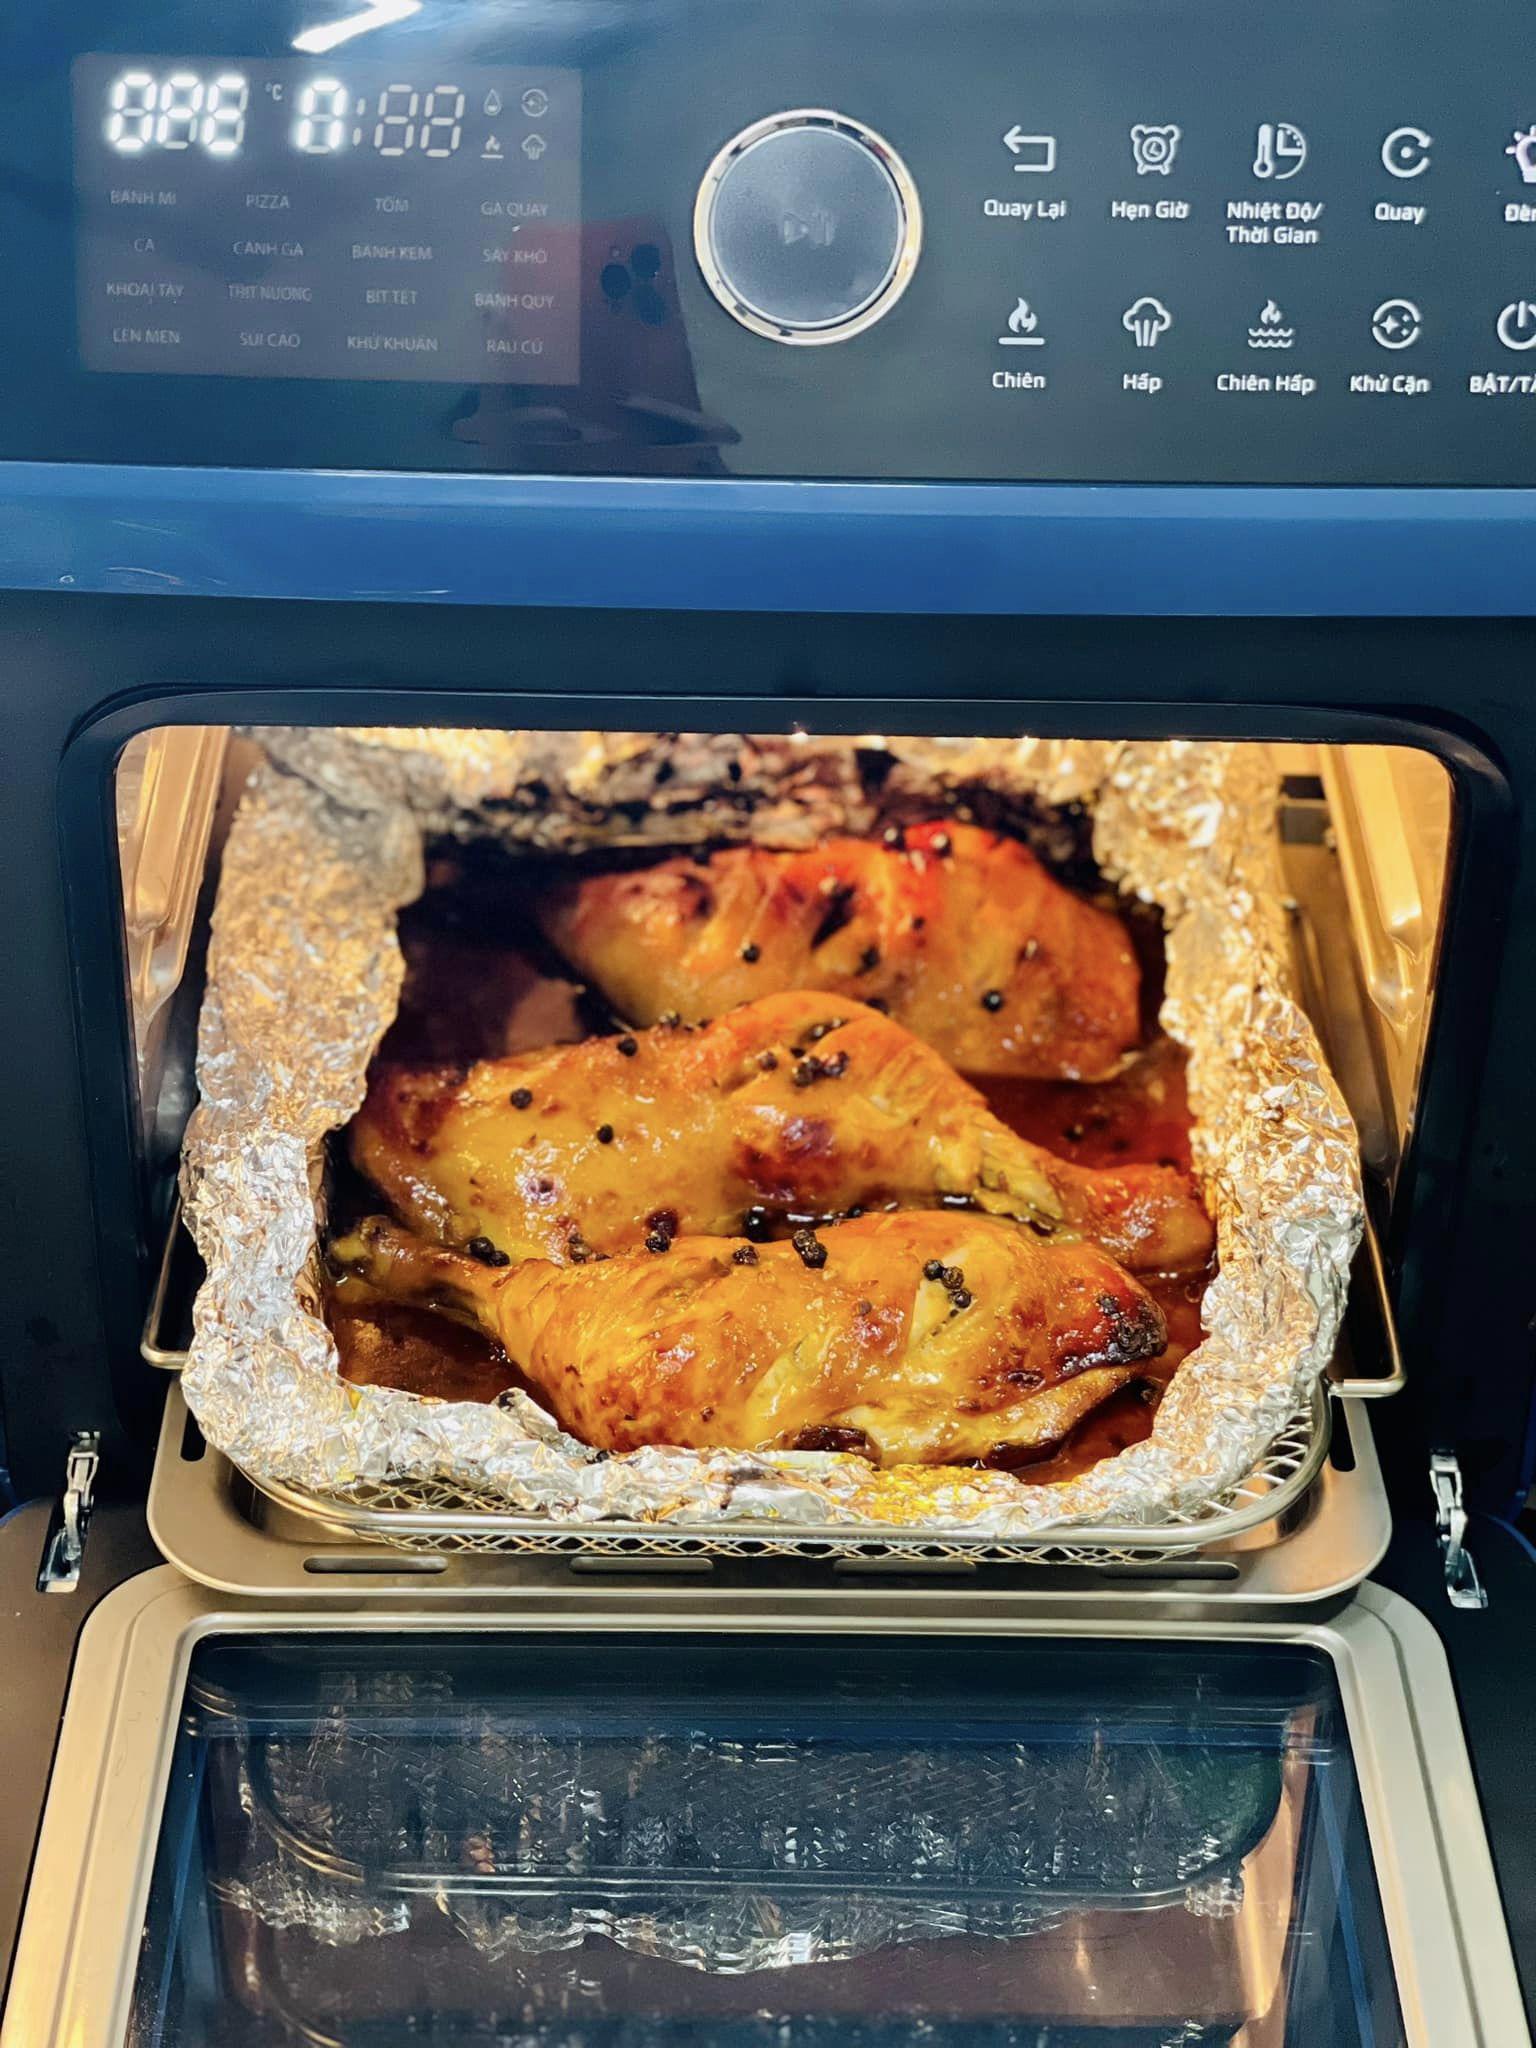 Nướng lần 2 ở 200℃ trong 20 phút. Giữa chừng có thể lật gà để thịt chín vàng đều.